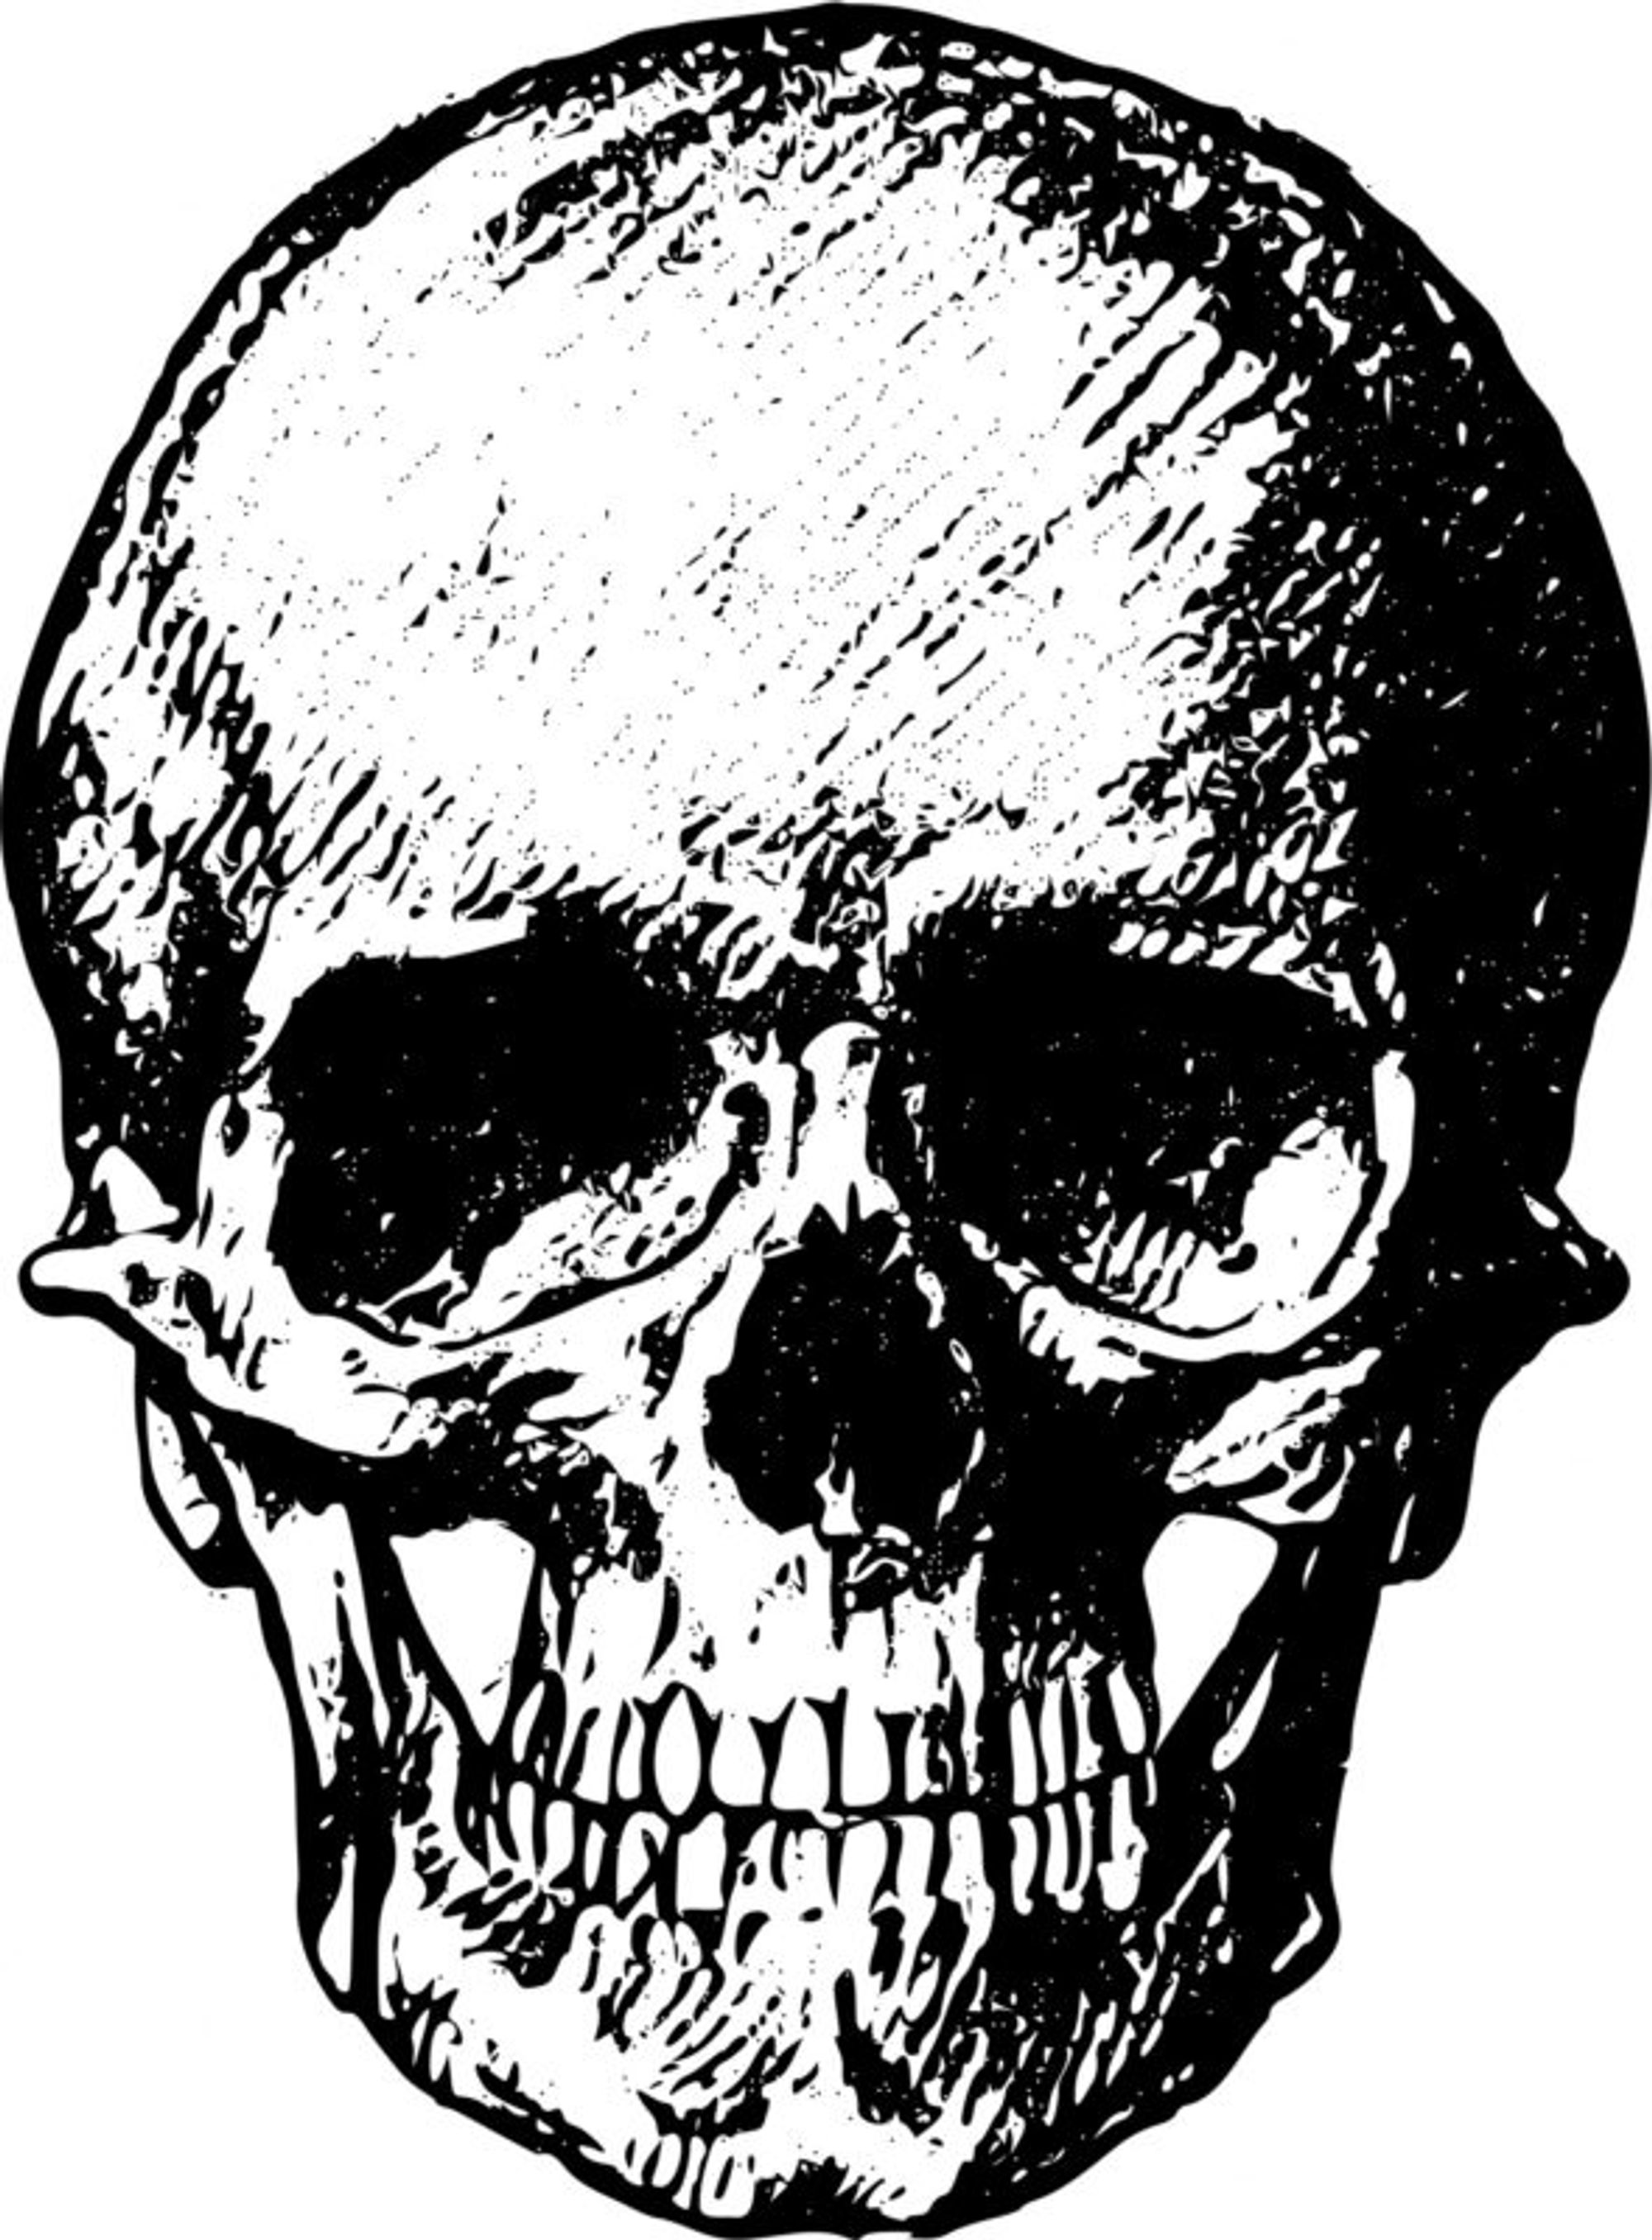 human-skull